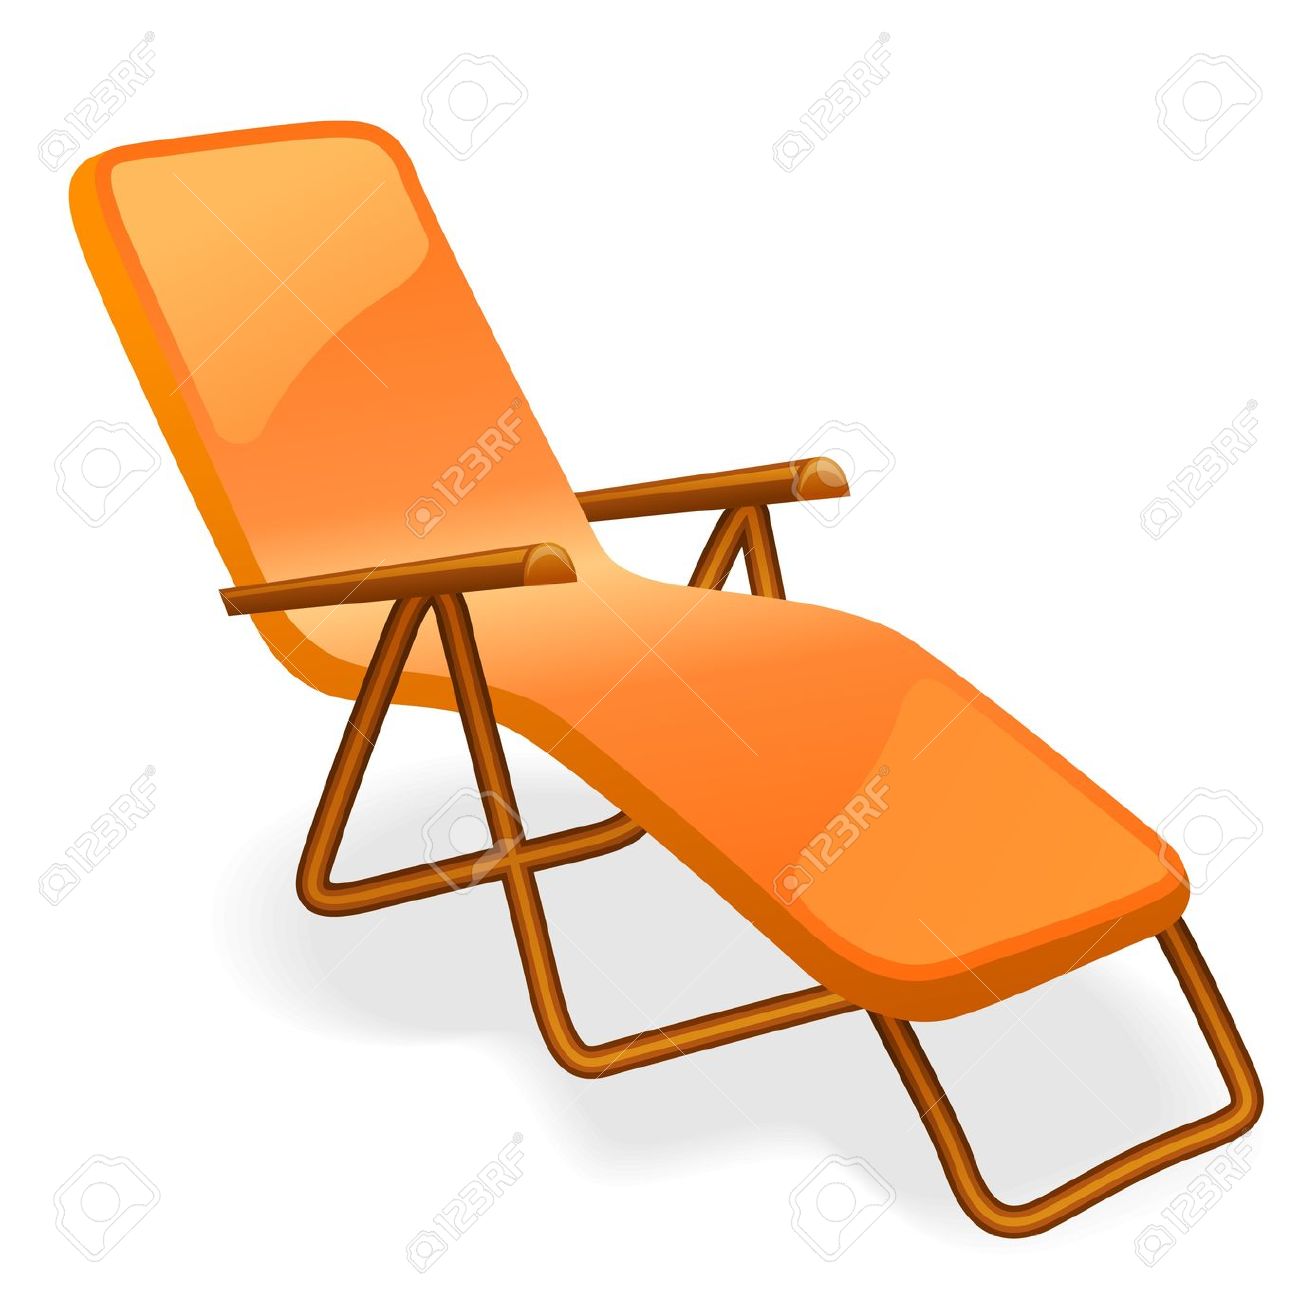 clipart gratuit chaise longue - photo #1